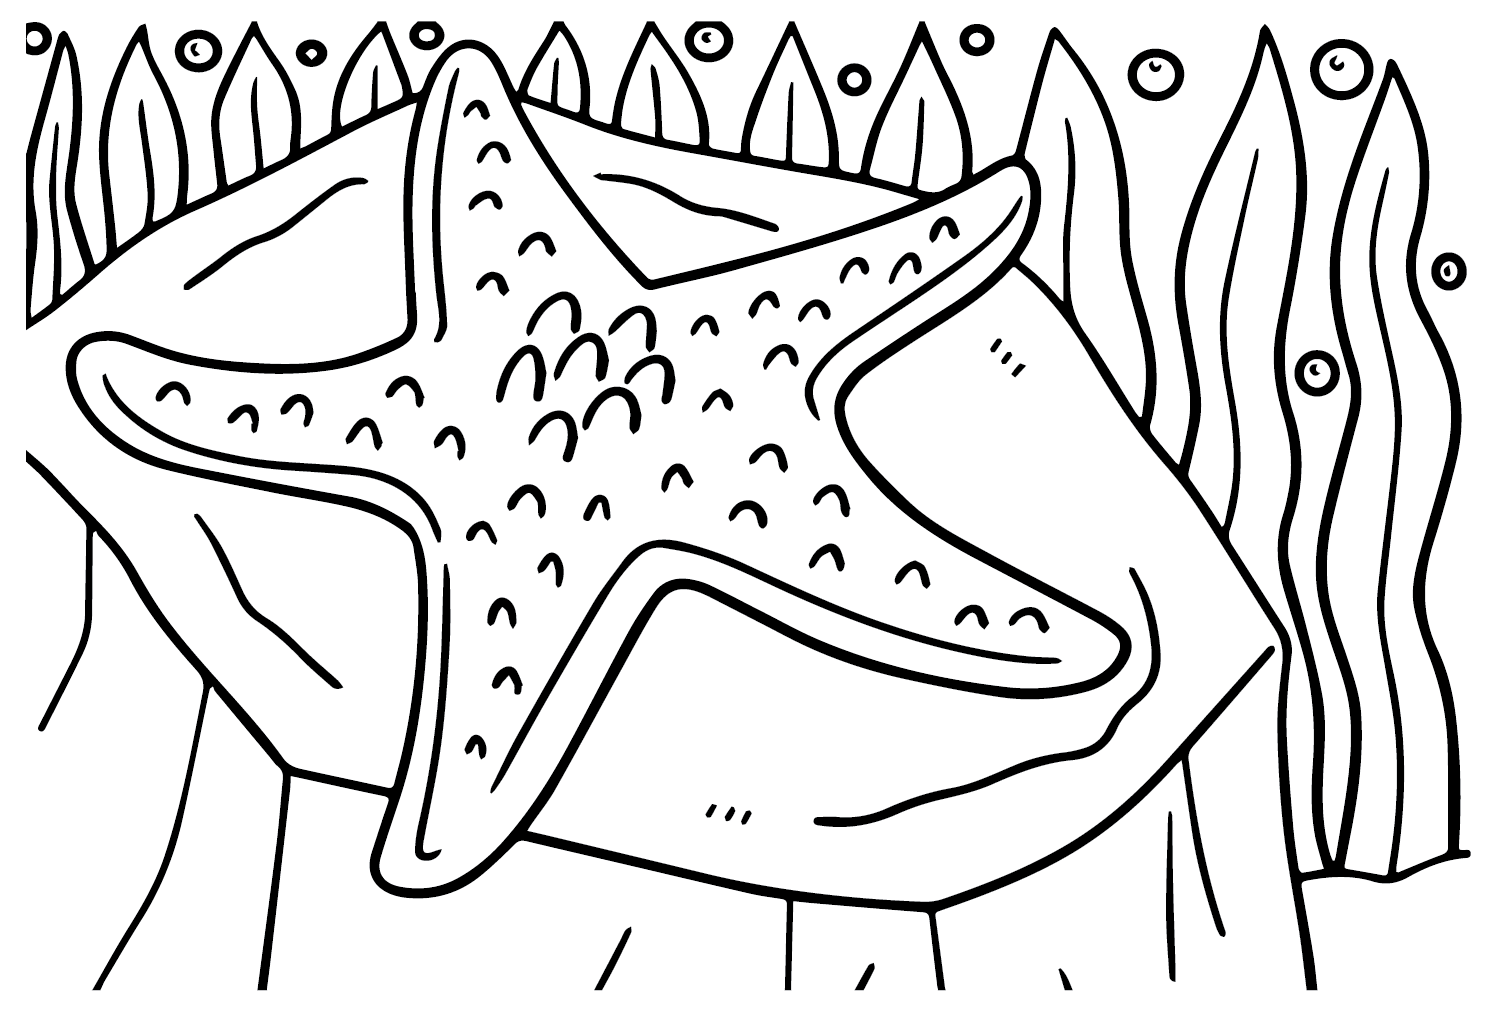 Desenhando estrela do mar de estrela do mar